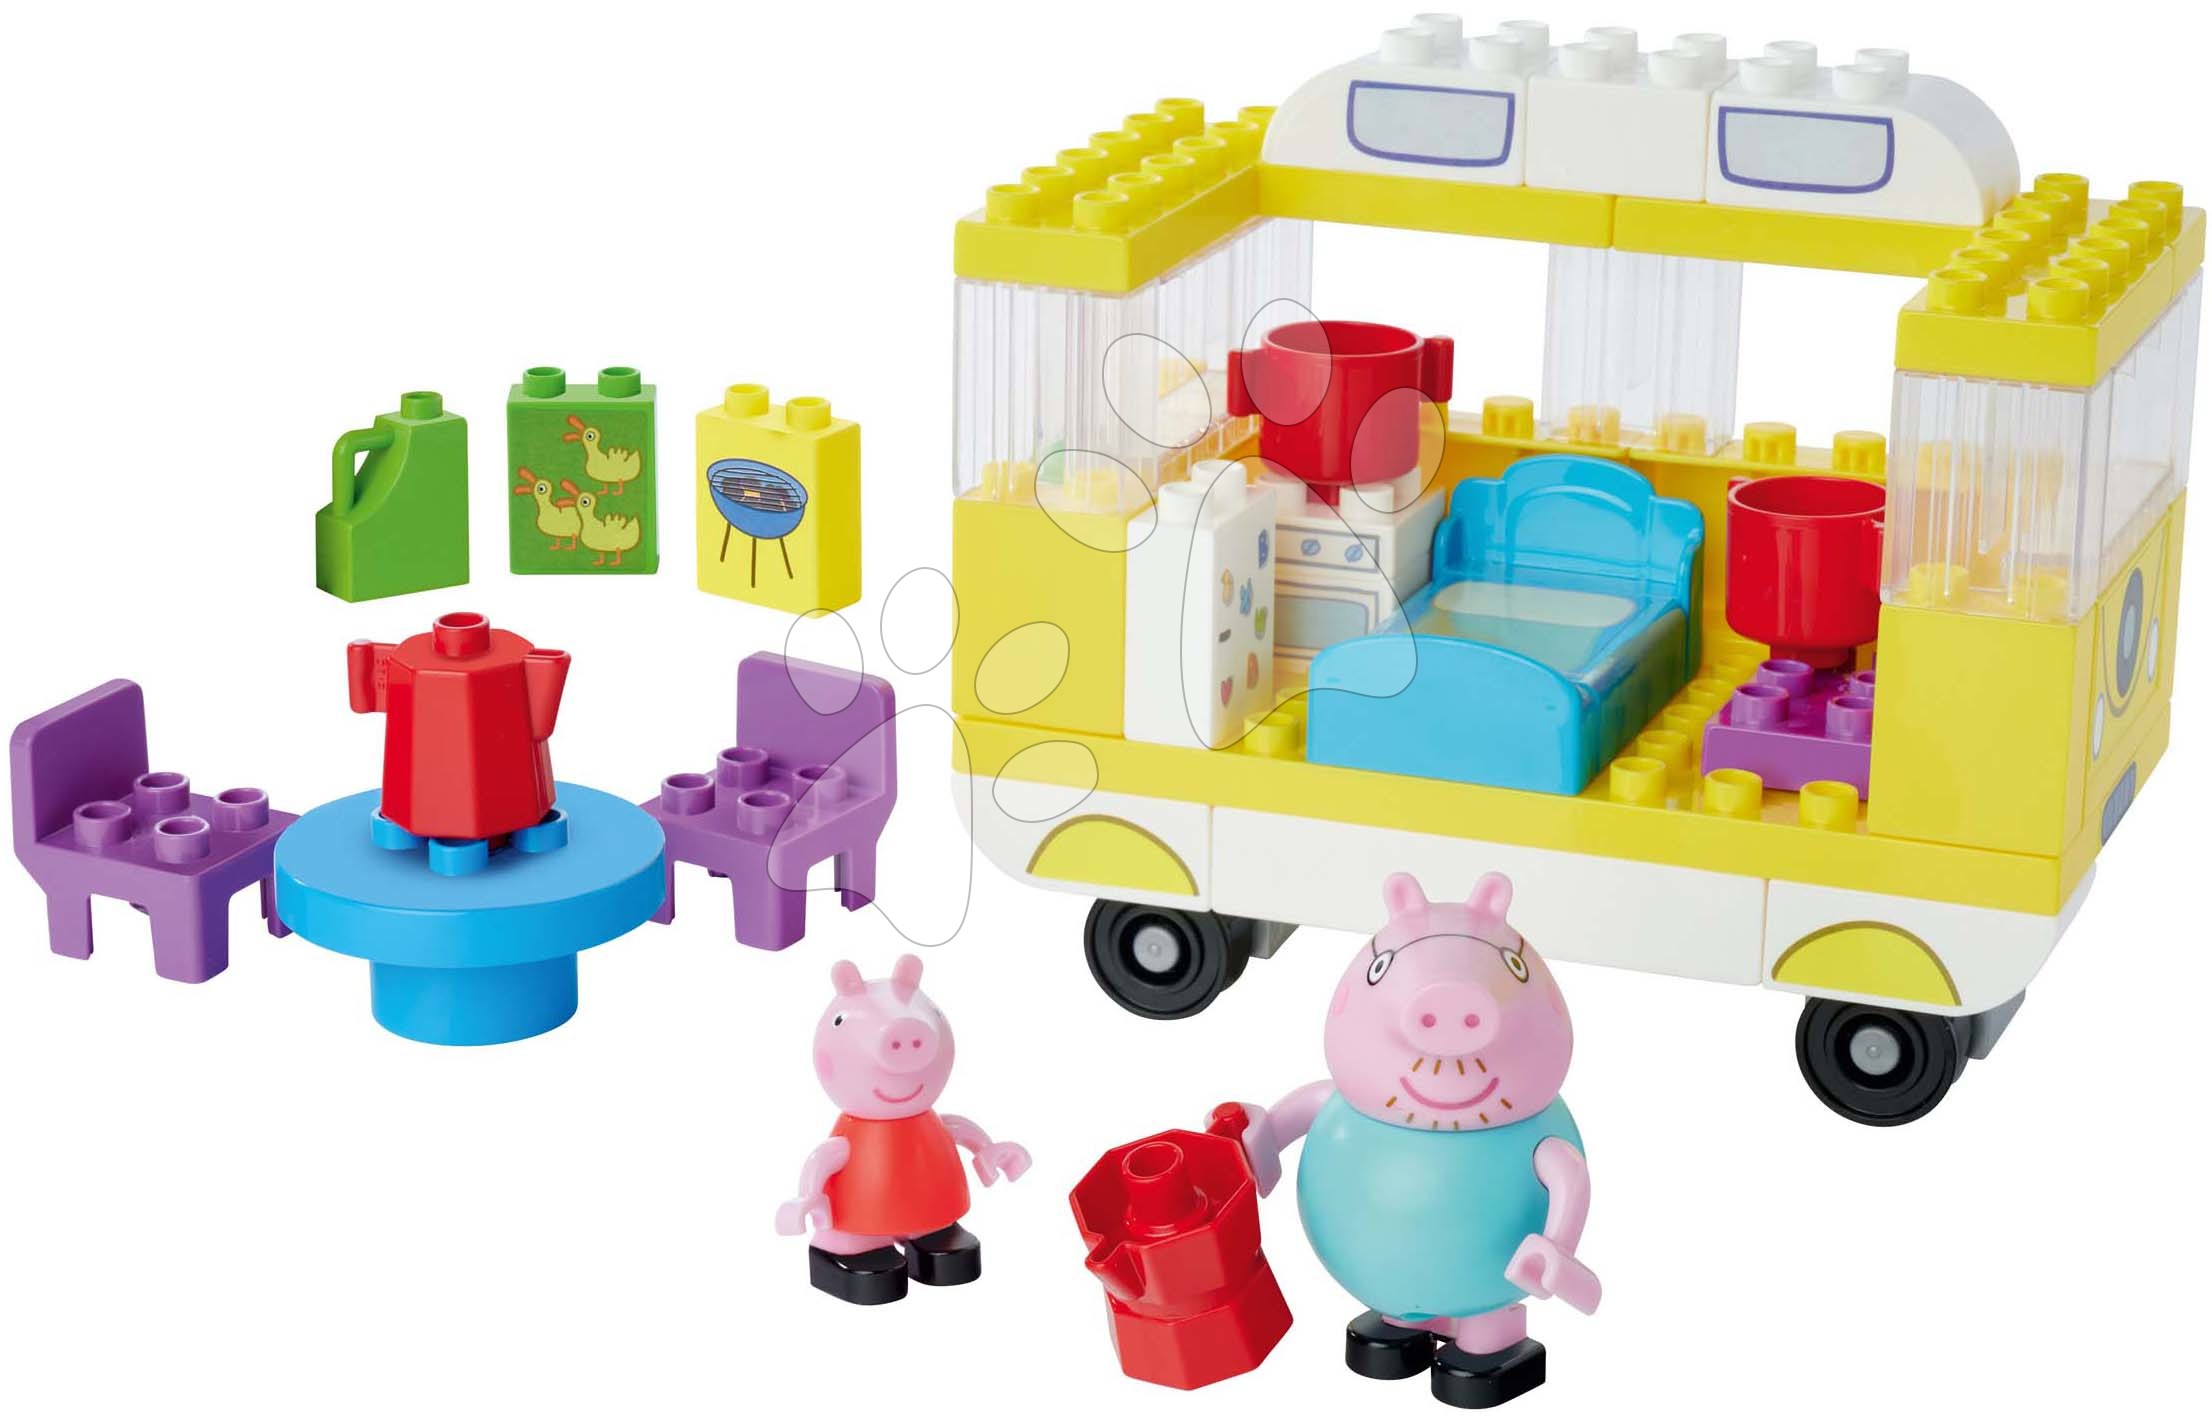 Építőjátékok BIG-Bloxx mint lego - Épytőjáték Peppa Pig Campervan PlayBig Bloxx BIG lakókocsi felszereléssel és 2 figurával 52 részes 1,5-5 évesnek